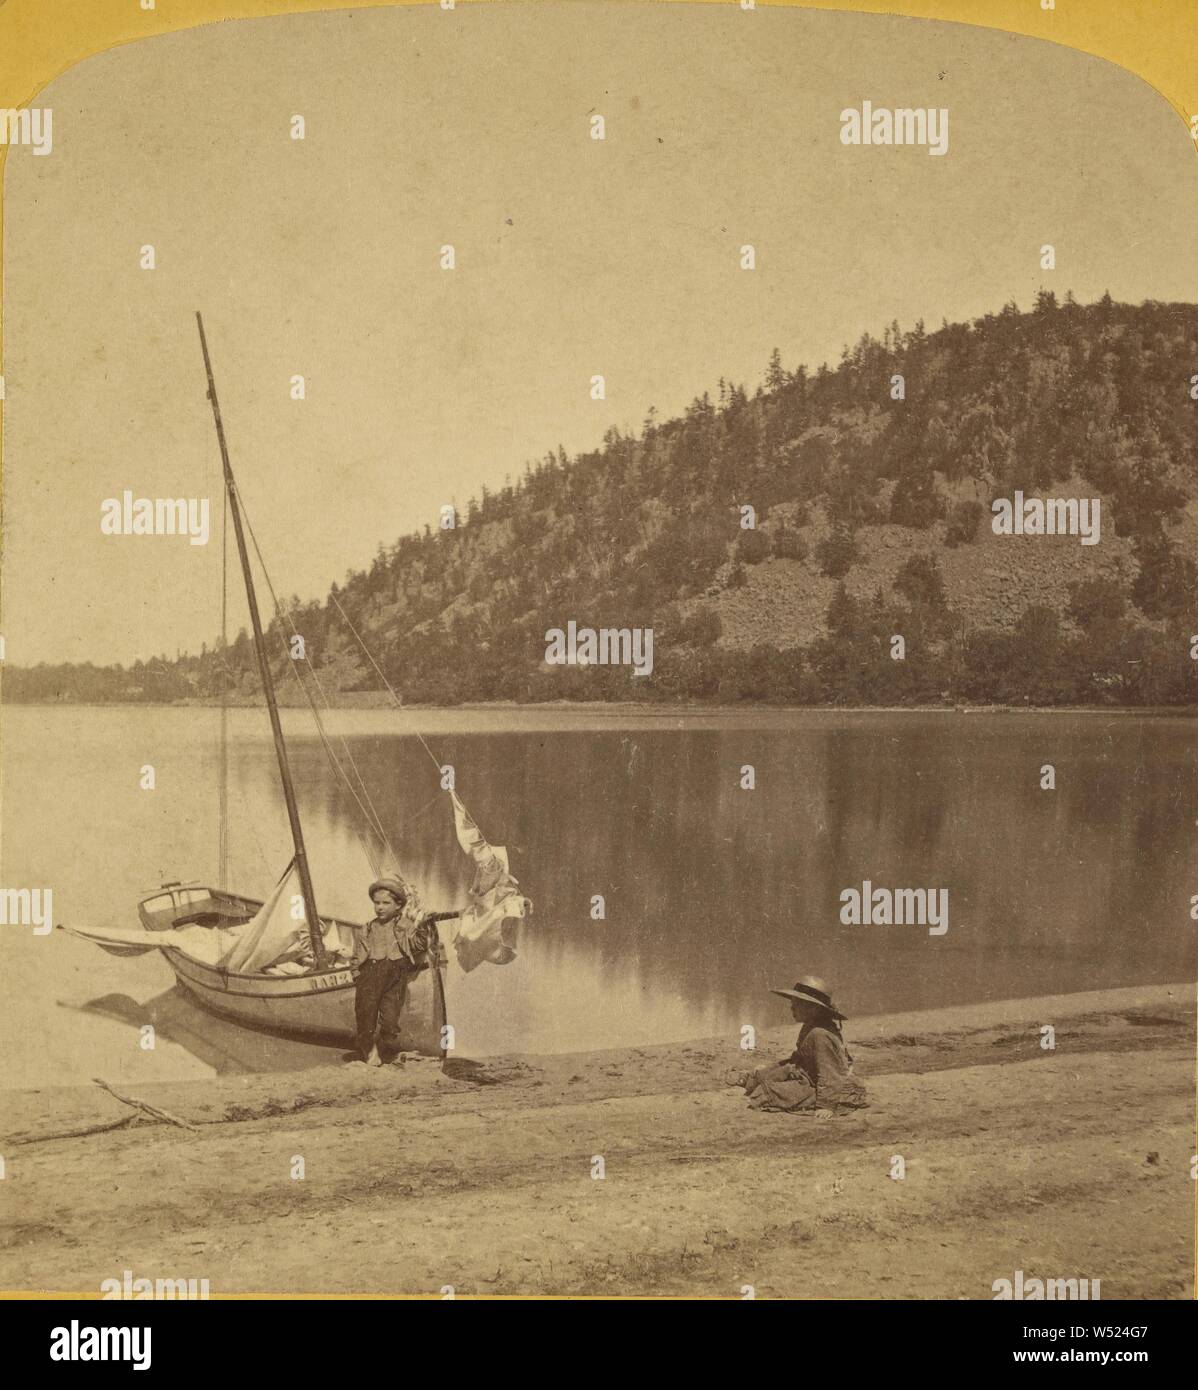 Verso il lago dalla spiaggia sabbiosa. Devil's Lake, nel Wisconsin, Henry Hamilton Bennett (American, nato in Canada, 1843 - 1908), circa 1870-1880, albume silver stampa Foto Stock